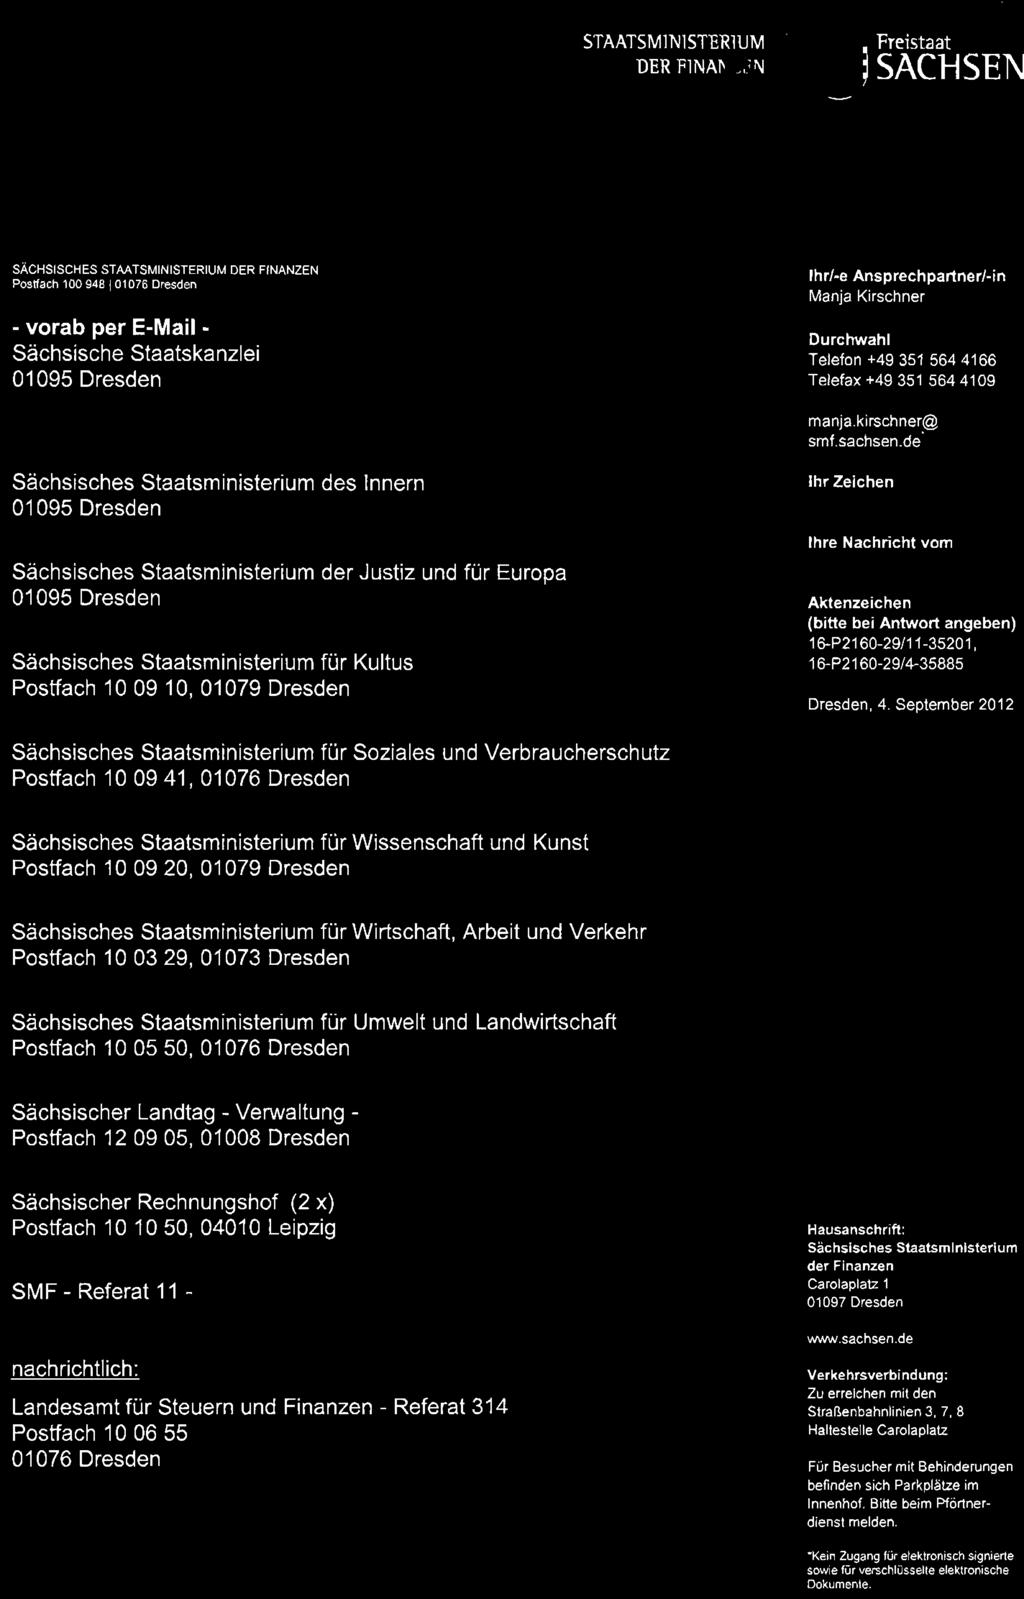 de" Sächsisches Staatsministerium des Innern 01095 Dresden Sächsisches Staatsministerium der Justiz und für Europa 01095 Dresden Sächsisches Staatsministerium für Kultus Postfach 10 09 10, 01079